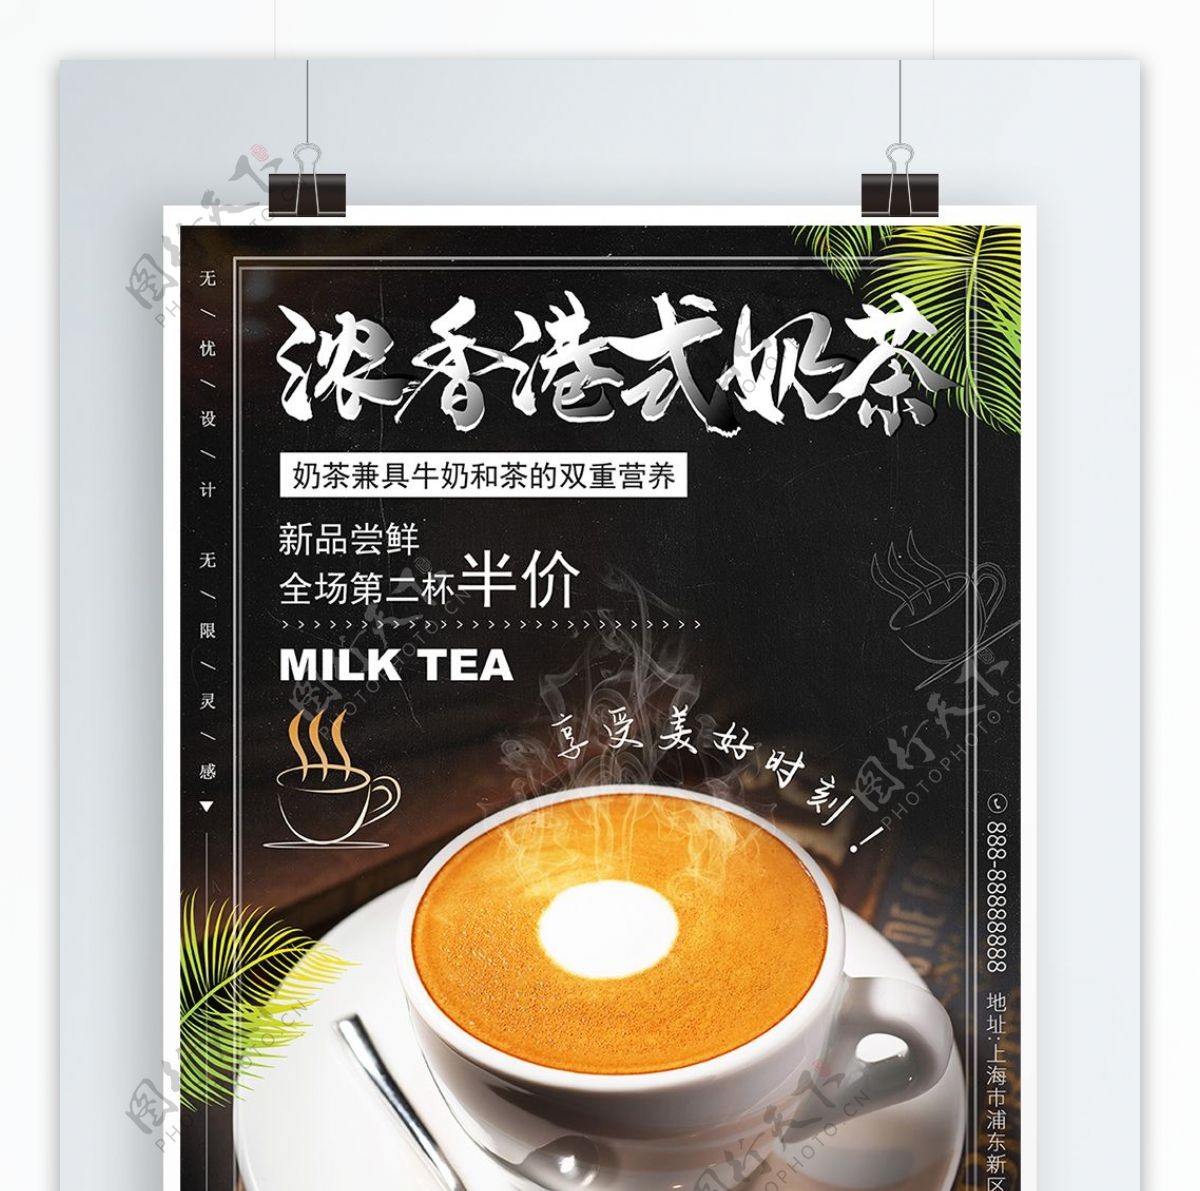 时尚简约浓香港式奶茶海报饮料饮品广告